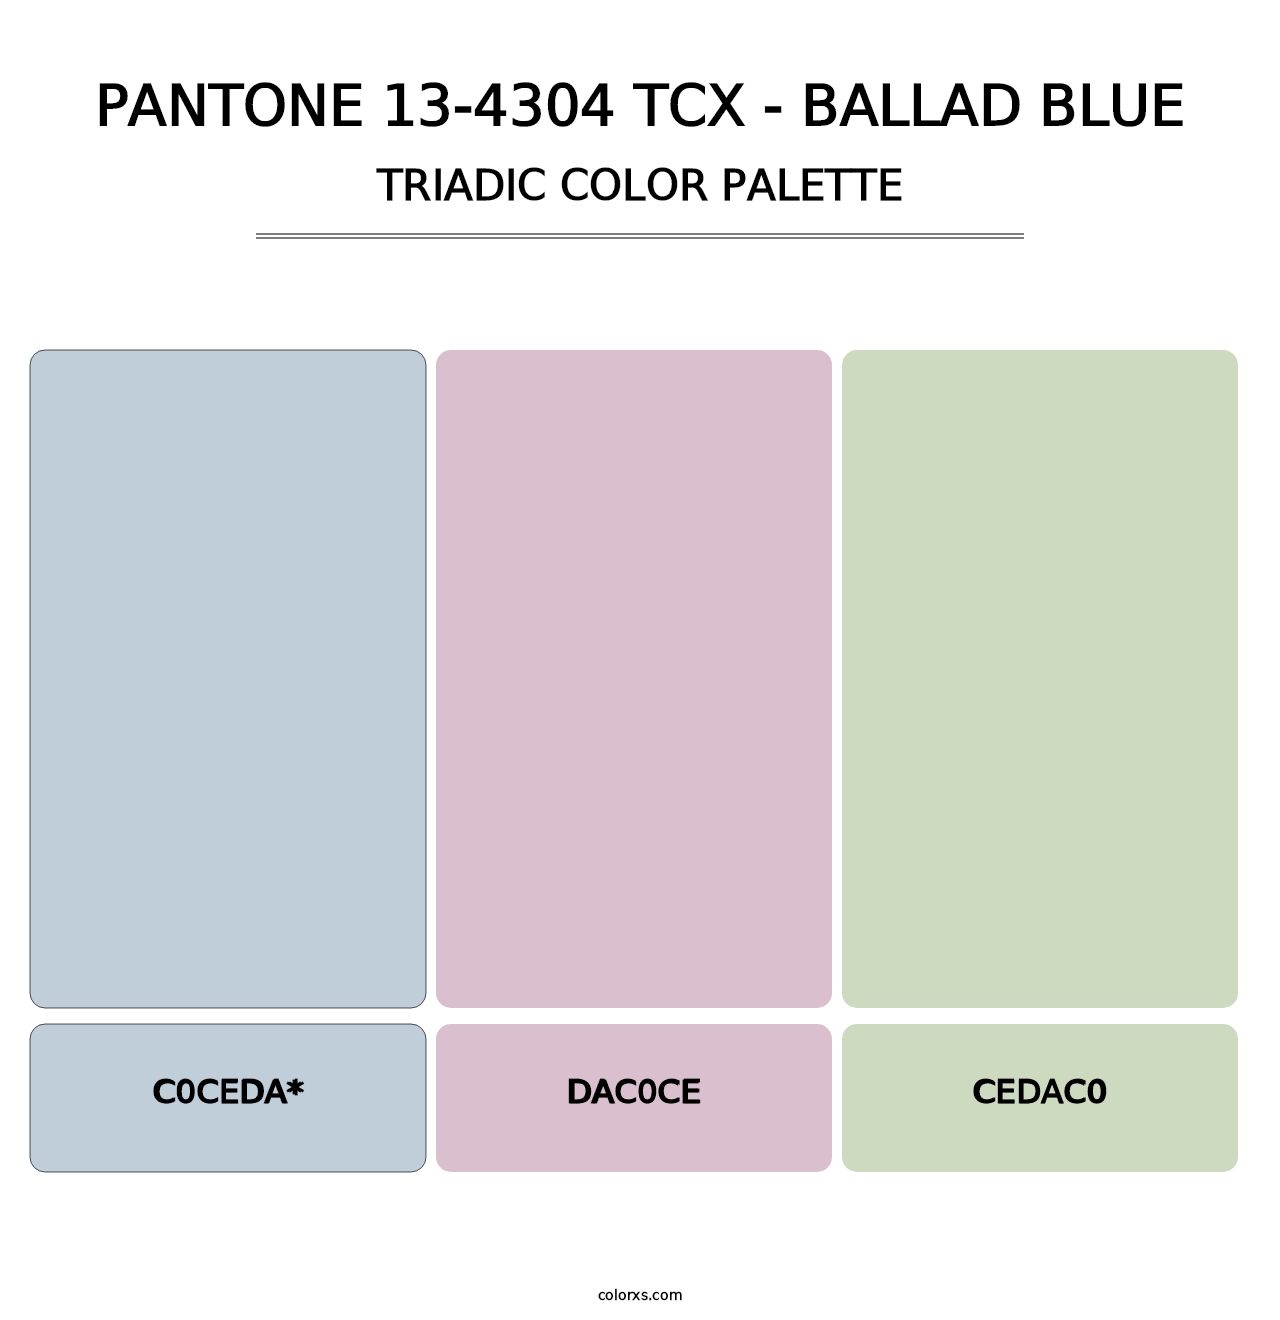 PANTONE 13-4304 TCX - Ballad Blue - Triadic Color Palette